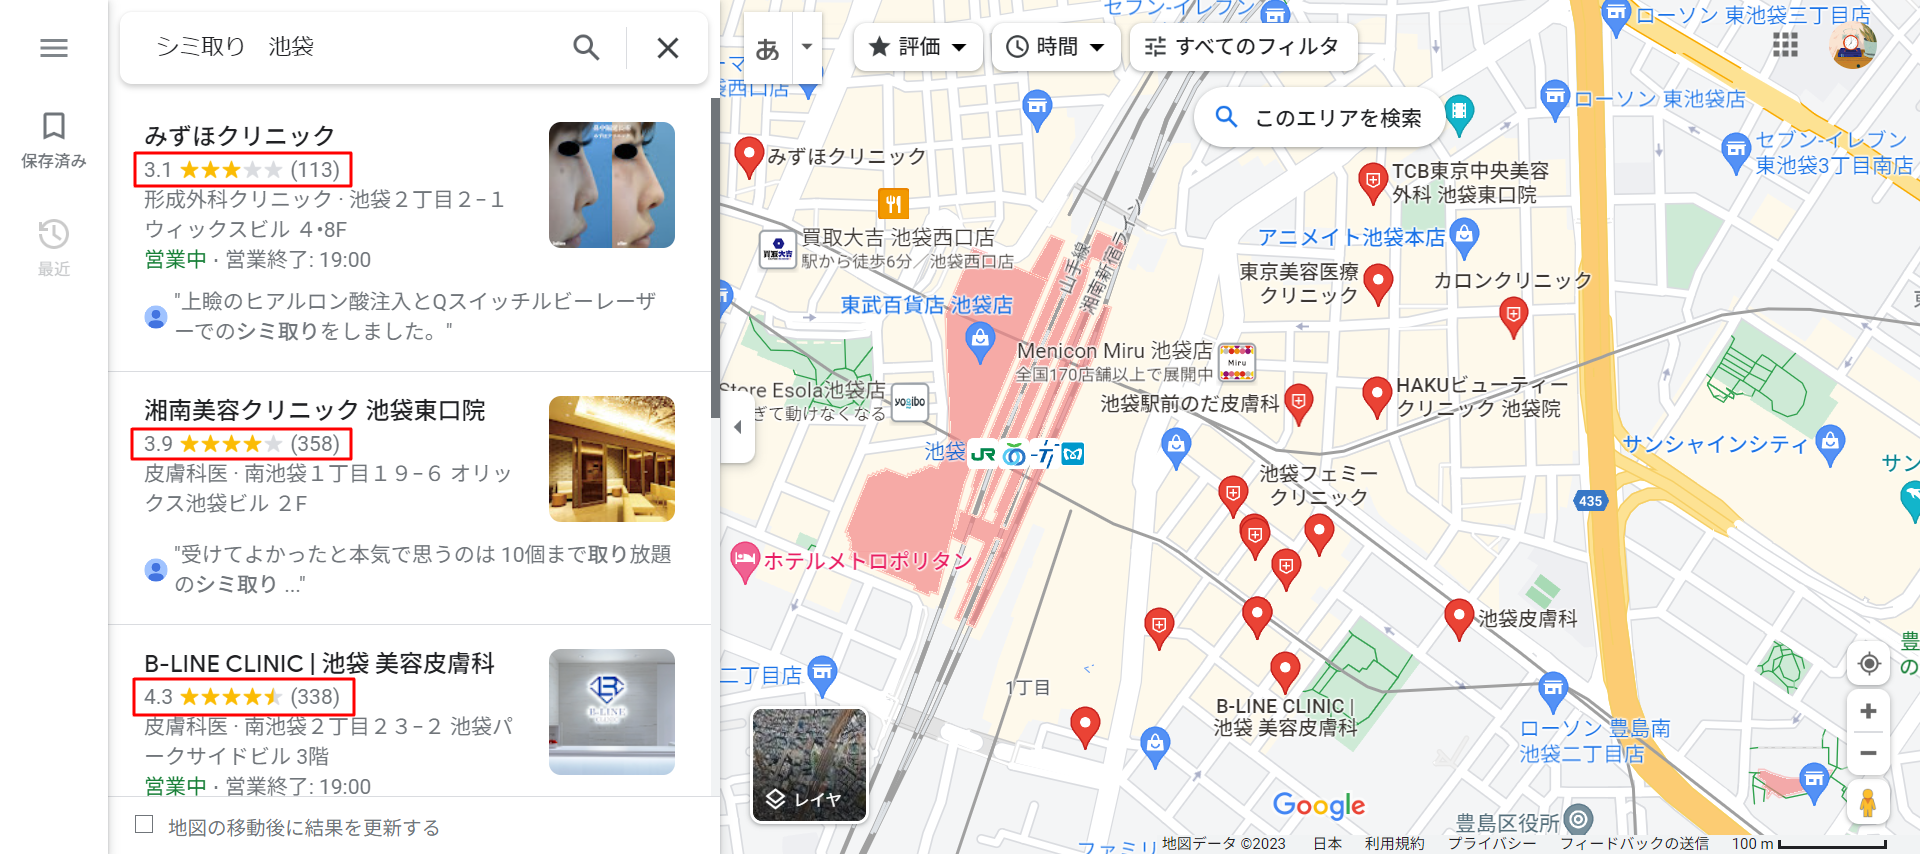 シミ取り-池袋-Google-マップ